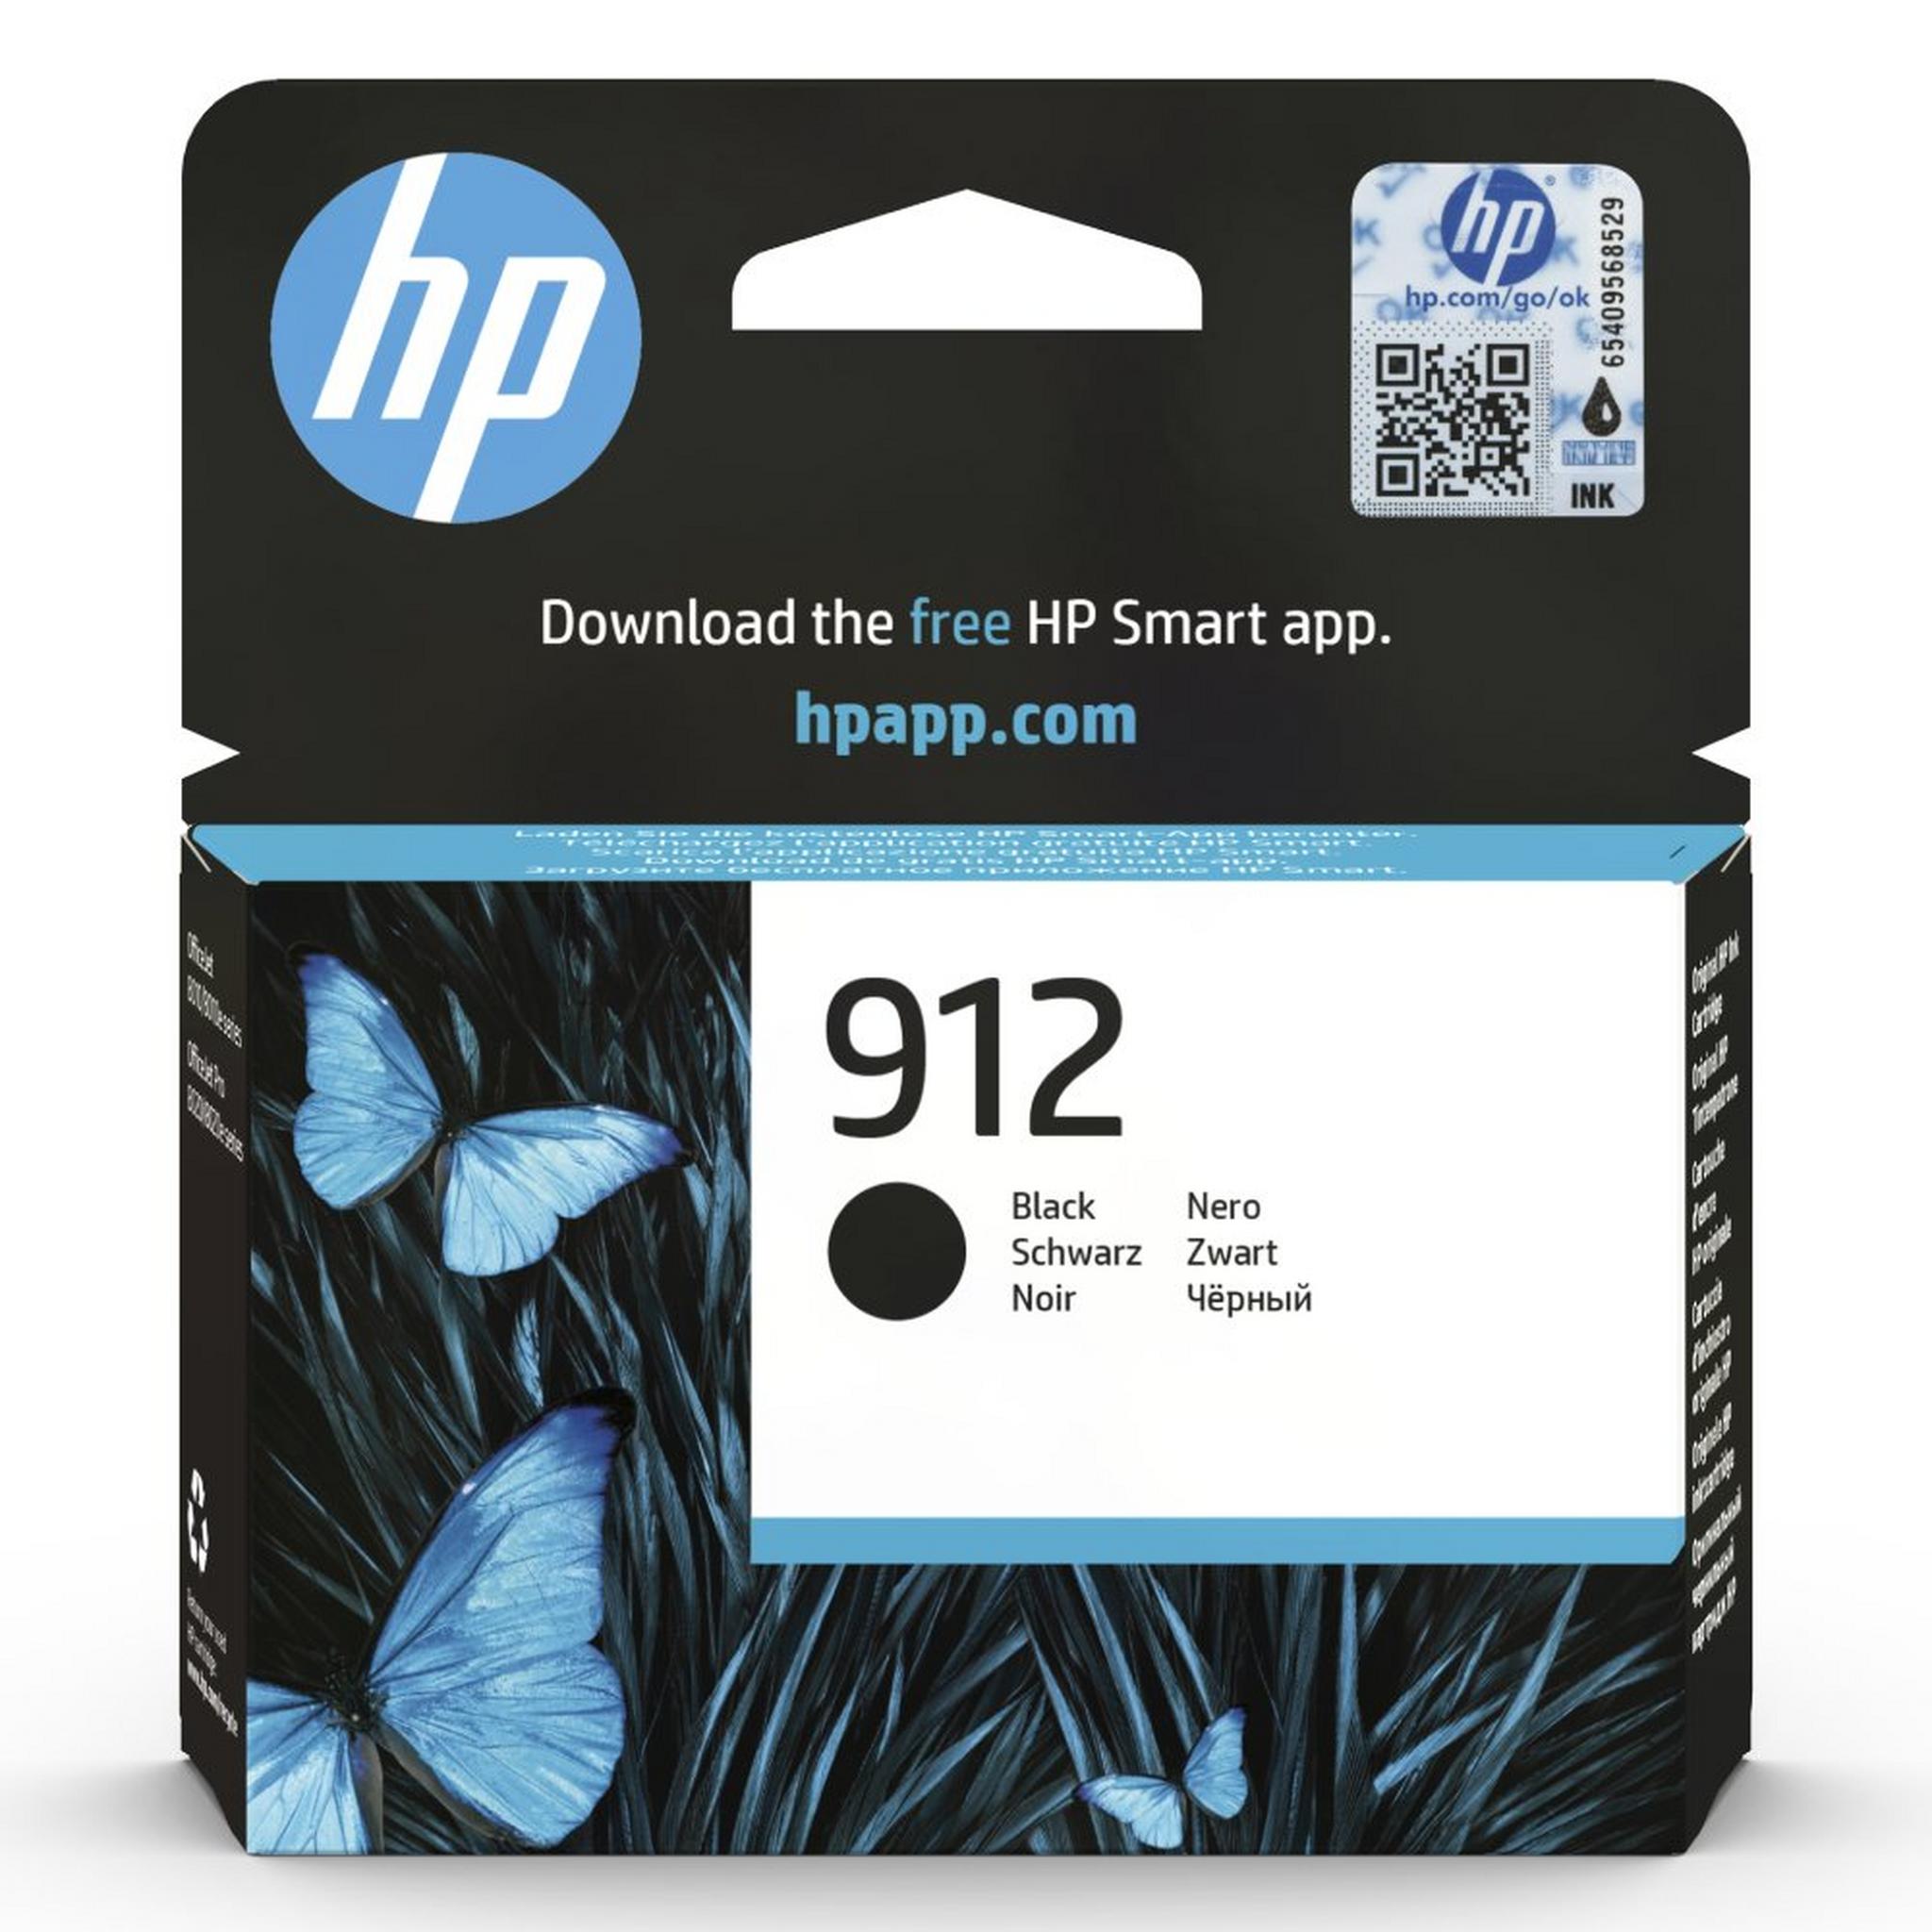 HP Ink 912 Black Ink